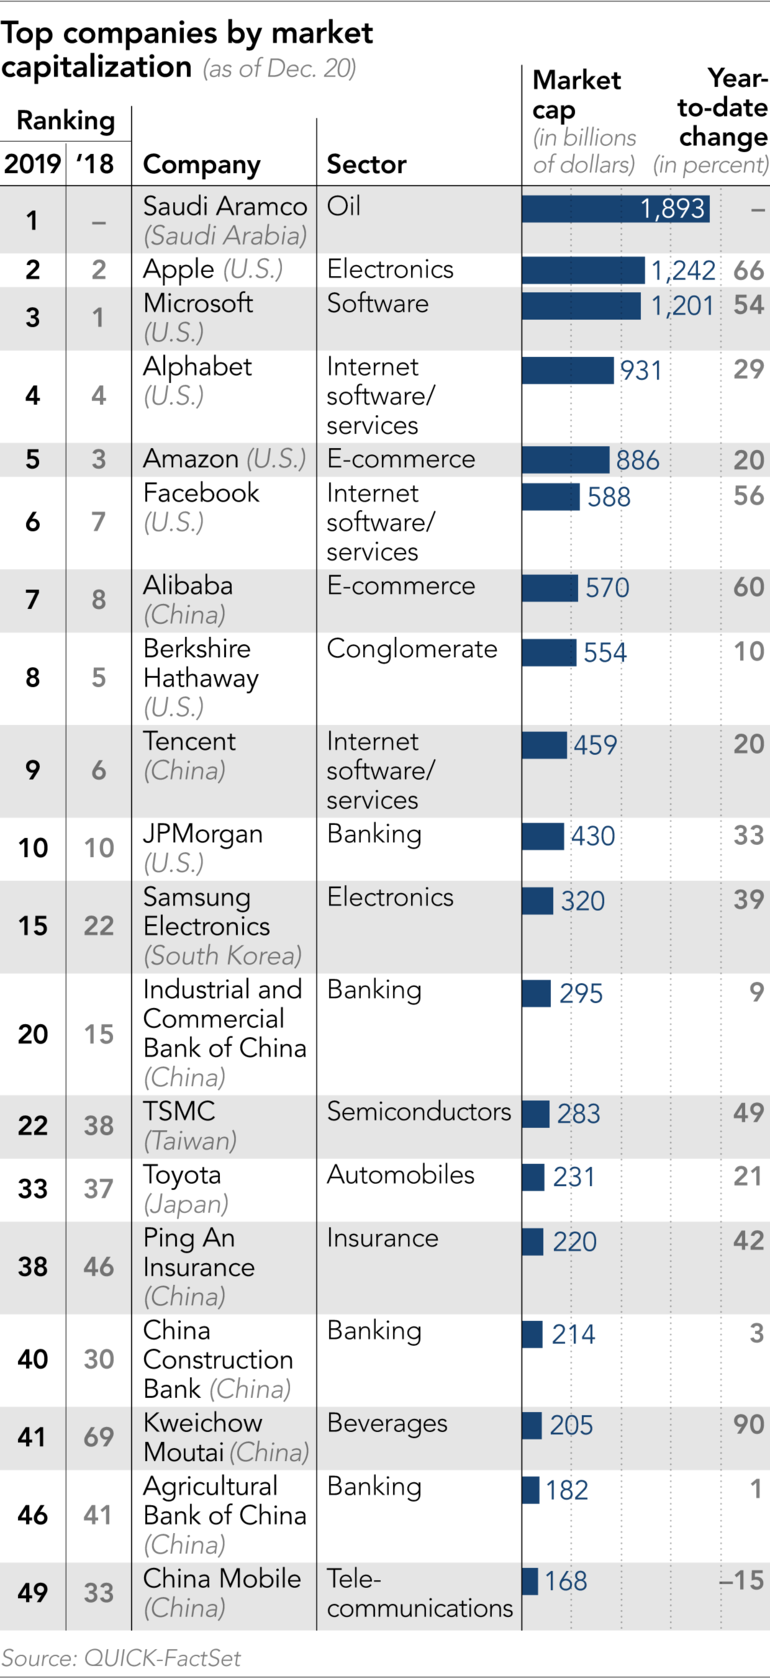 2019全球企业排行榜_2019全球轮胎企业排行榜 中国12家上榜